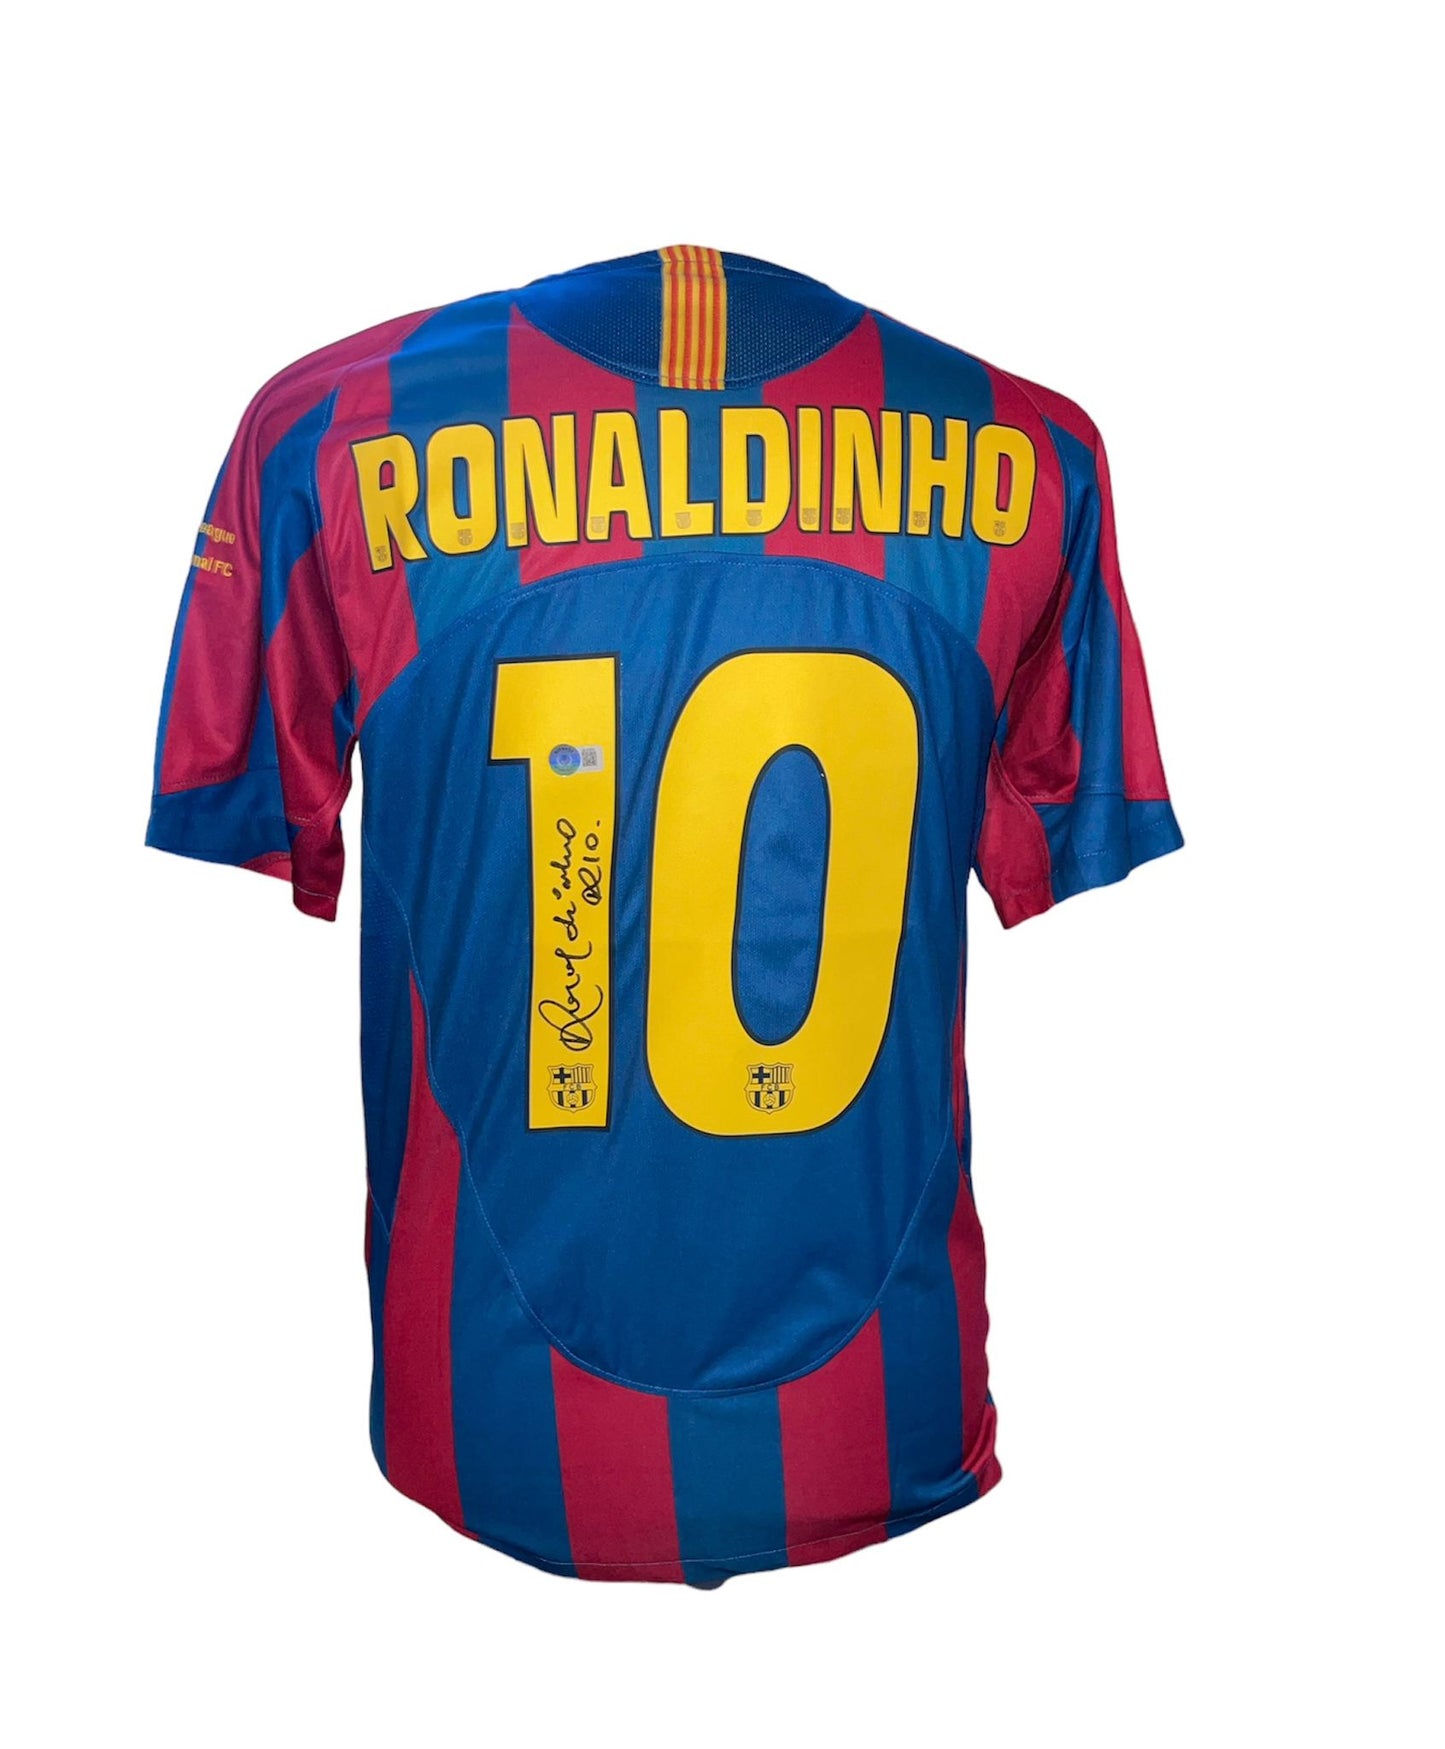 Ronaldinho gesigneerd FC Barcelona Champions League finale 05/06 shirt met certificaat